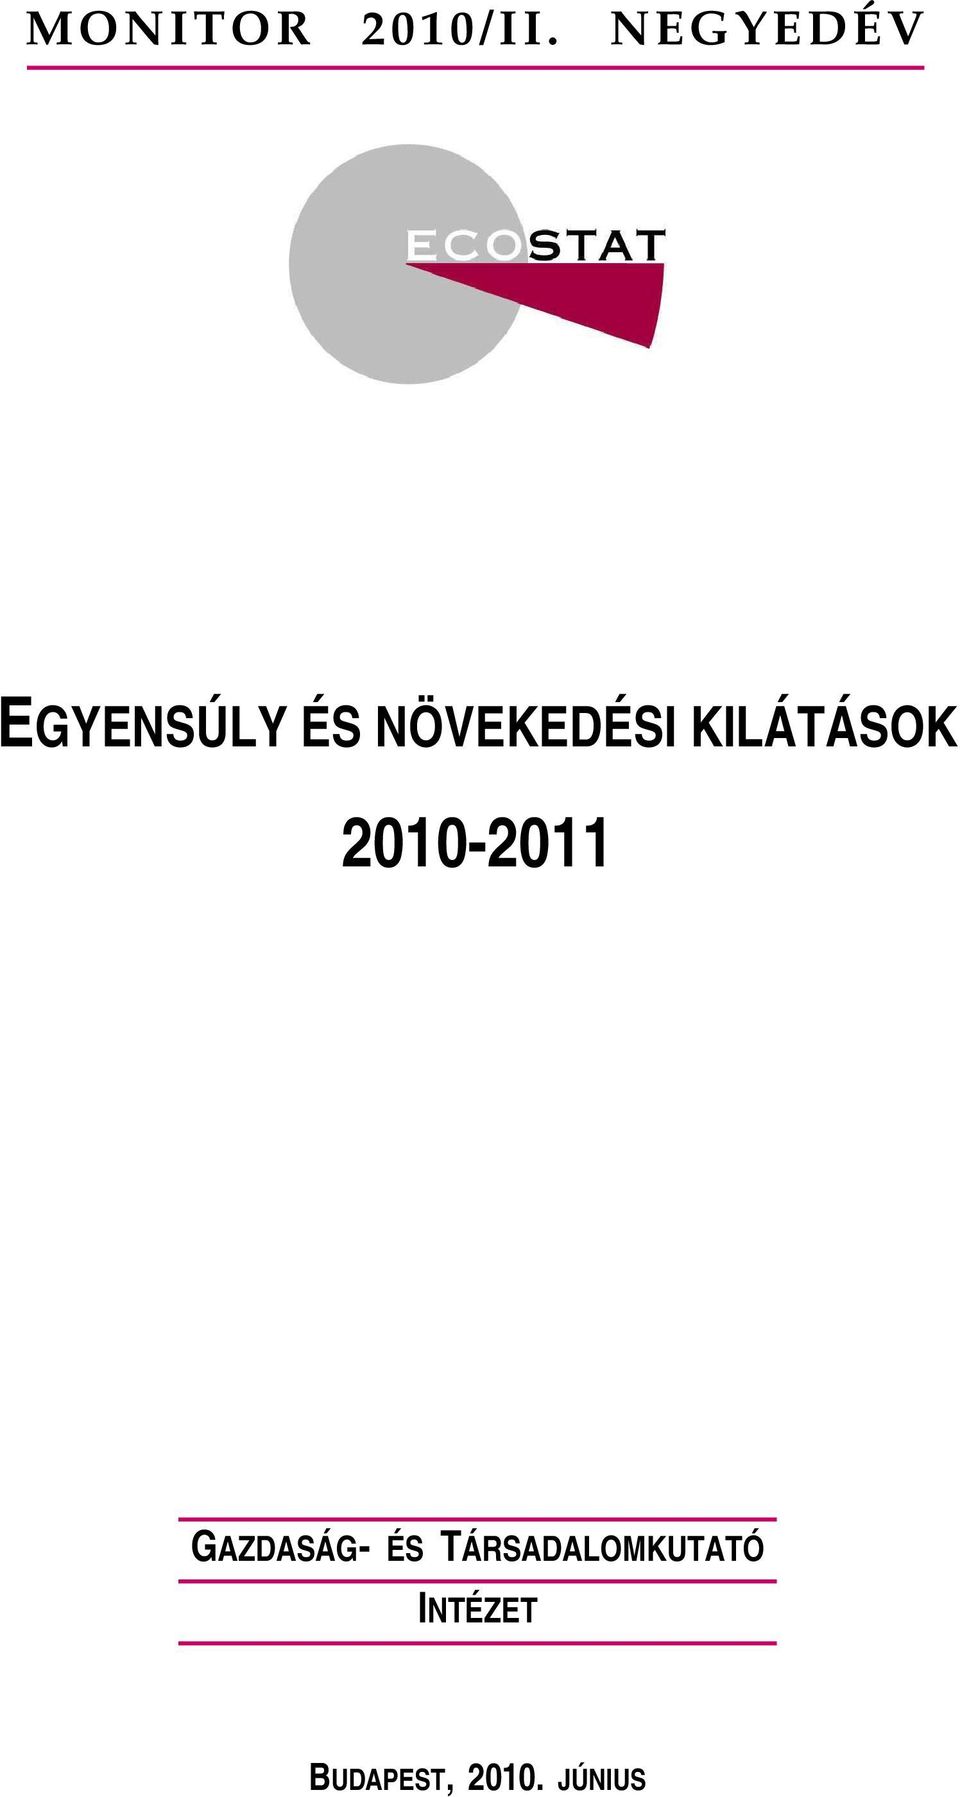 KILÁTÁSOK 2010-2011 GAZDASÁG- ÉS